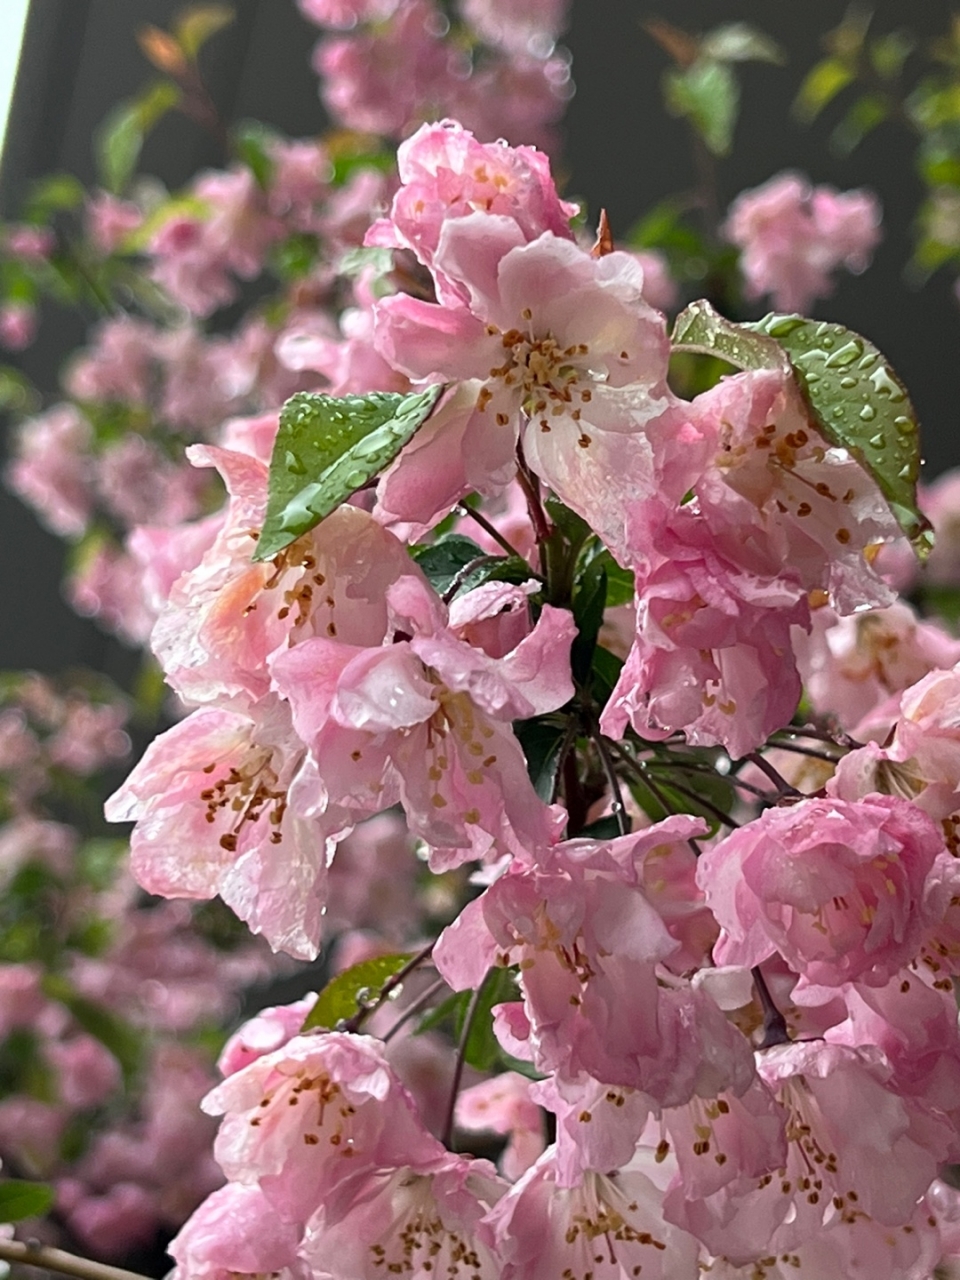 봄비가 촉촉히 내린 11일 서울 강남구에 위치한 한 겹벚꽃나무가 봄비에 흠뻑 젖어 있다. ⓒ홍수형 기자